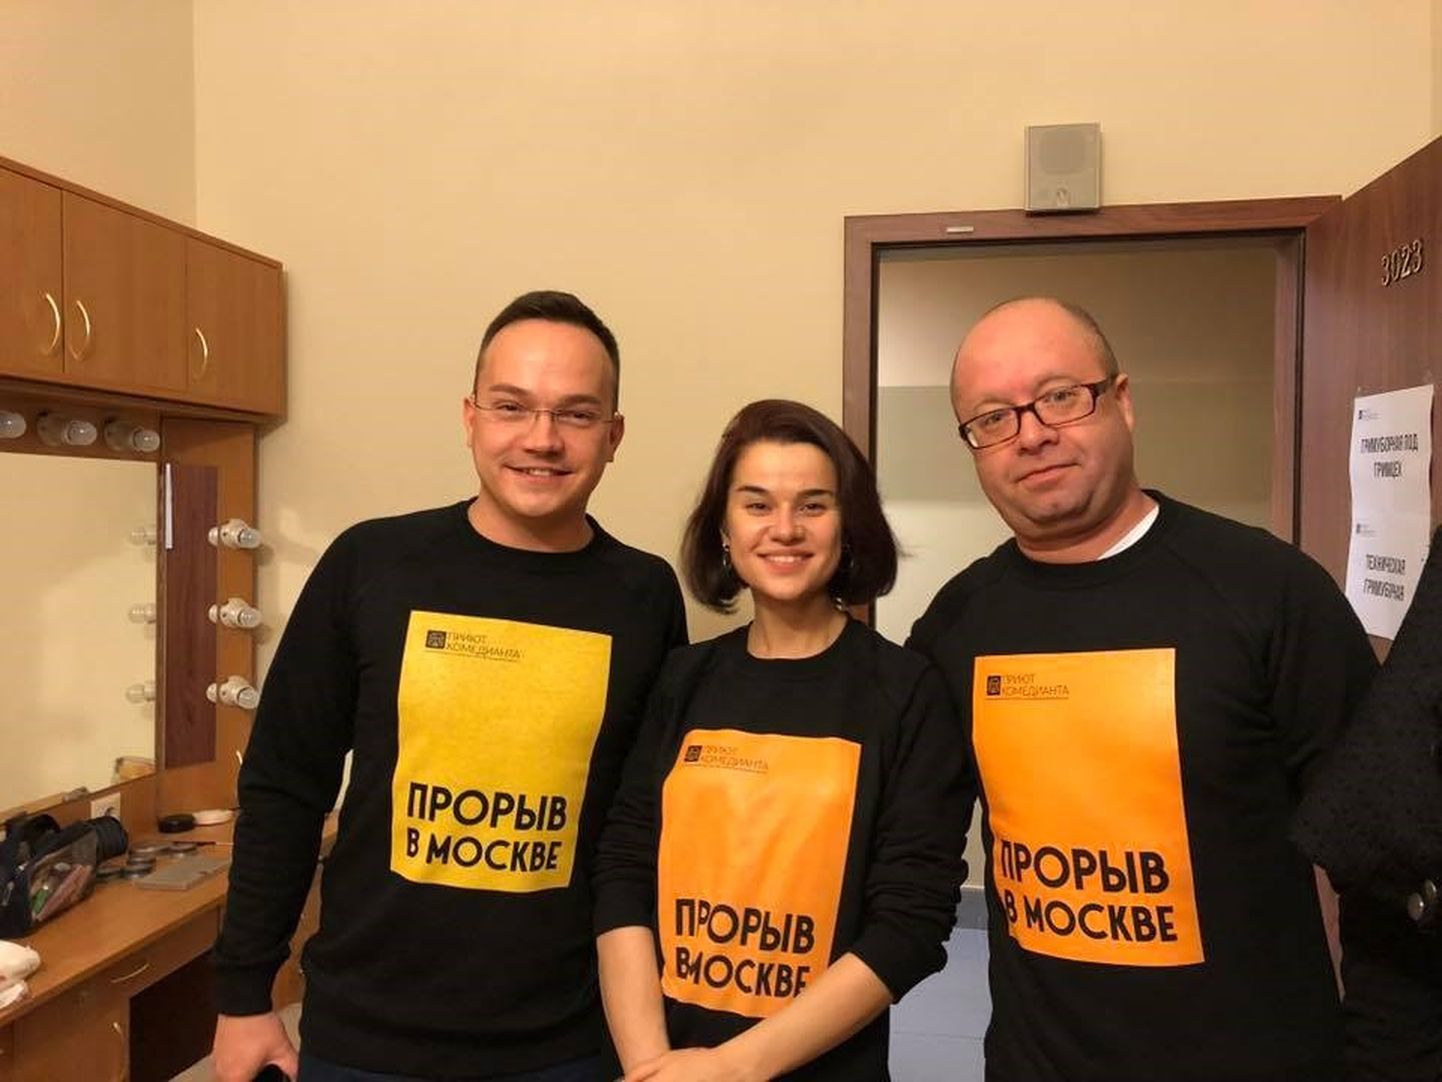 В прошлом году проектный театр "Приют комедианта" совершил прорыв в Москве, выступив в театре имени Евгения Вахтангова. Руководитель театра Виктор Минков на снимке справа.